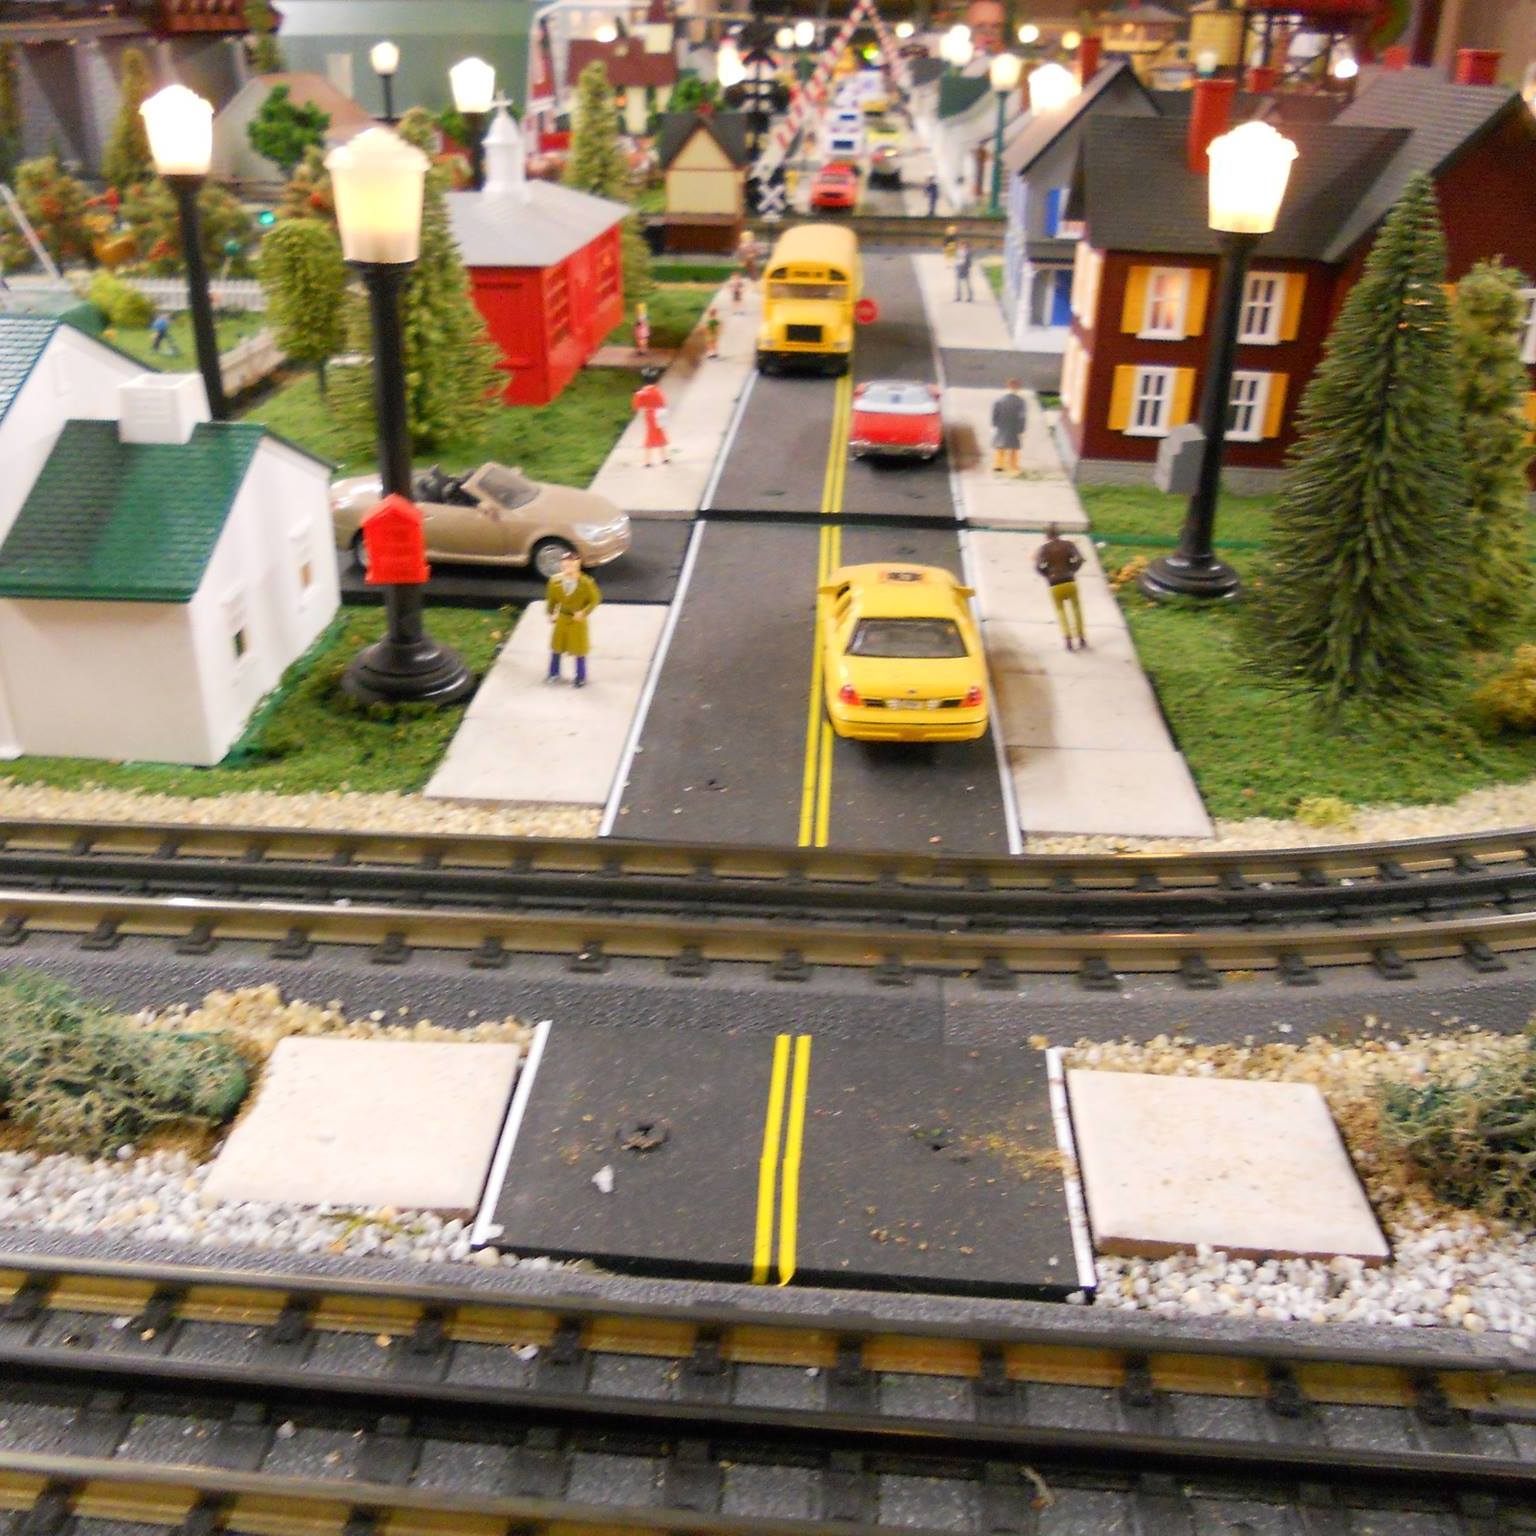 Community Model Railroad Club